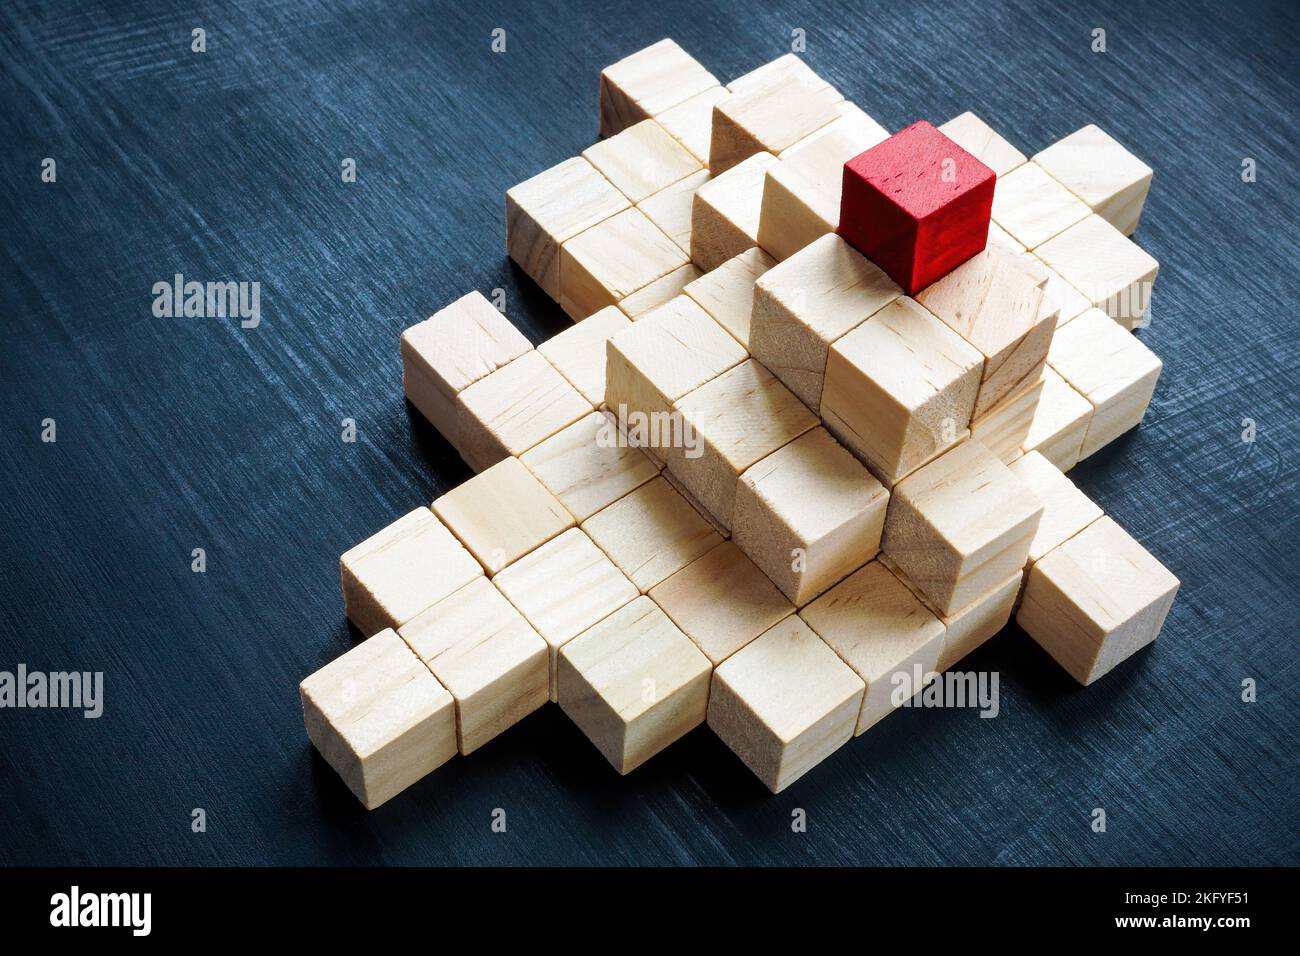 Eine Pyramide aus Würfeln und eine rote oben. Das Konzept von Führung, Erfolg und Unternehmenshierarchie. Stockfoto